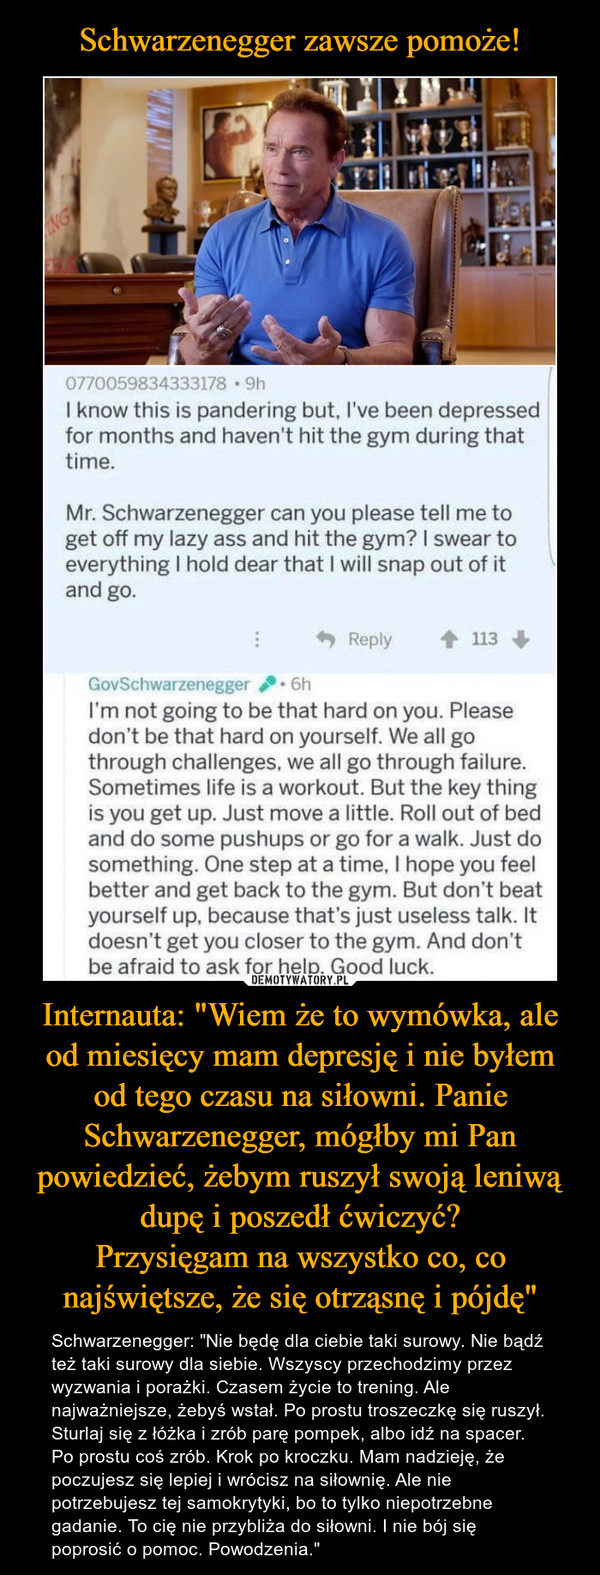 Internauta: "Wiem że to wymówka, ale od miesięcy mam depresję i nie byłem od tego czasu na siłowni. Panie Schwarzenegger, mógłby mi Pan powiedzieć, żebym ruszył swoją leniwą dupę i poszedł ćwiczyć?Przysięgam na wszystko co, co najświętsze, że się otrząsnę i pójdę" – Schwarzenegger: "Nie będę dla ciebie taki surowy. Nie bądź też taki surowy dla siebie. Wszyscy przechodzimy przez wyzwania i porażki. Czasem życie to trening. Ale najważniejsze, żebyś wstał. Po prostu troszeczkę się ruszył. Sturlaj się z łóżka i zrób parę pompek, albo idź na spacer. Po prostu coś zrób. Krok po kroczku. Mam nadzieję, że poczujesz się lepiej i wrócisz na siłownię. Ale nie potrzebujesz tej samokrytyki, bo to tylko niepotrzebne gadanie. To cię nie przybliża do siłowni. I nie bój się poprosić o pomoc. Powodzenia." NG0770059834333178 • 9hI know this is pandering but, l've been depressedfor months and haven't hit the gym during thattime.Mr. Schwarzenegger can you please tell me toget off my lazy ass and hit the gym? I swear toeverything I hold dear that I will snap out of itand go.Reply113GovSchwarzenegger6hI'm not going to be that hard on you. Pleasedon't be that hard on yourself. We all gothrough challenges, we all go through failure.Sometimes life is a workout. But the key thingis you get up. Just move a little. Roll out of bedand do some pushups or go for a walk. Just dosomething. One step at a time, I hope you feelbetter and get back to the gym. But don't beatyourself up, because that's just useless talk. Itdoesn't get you closer to the gym. And don'tbe afraid to ask for help. Good luck.